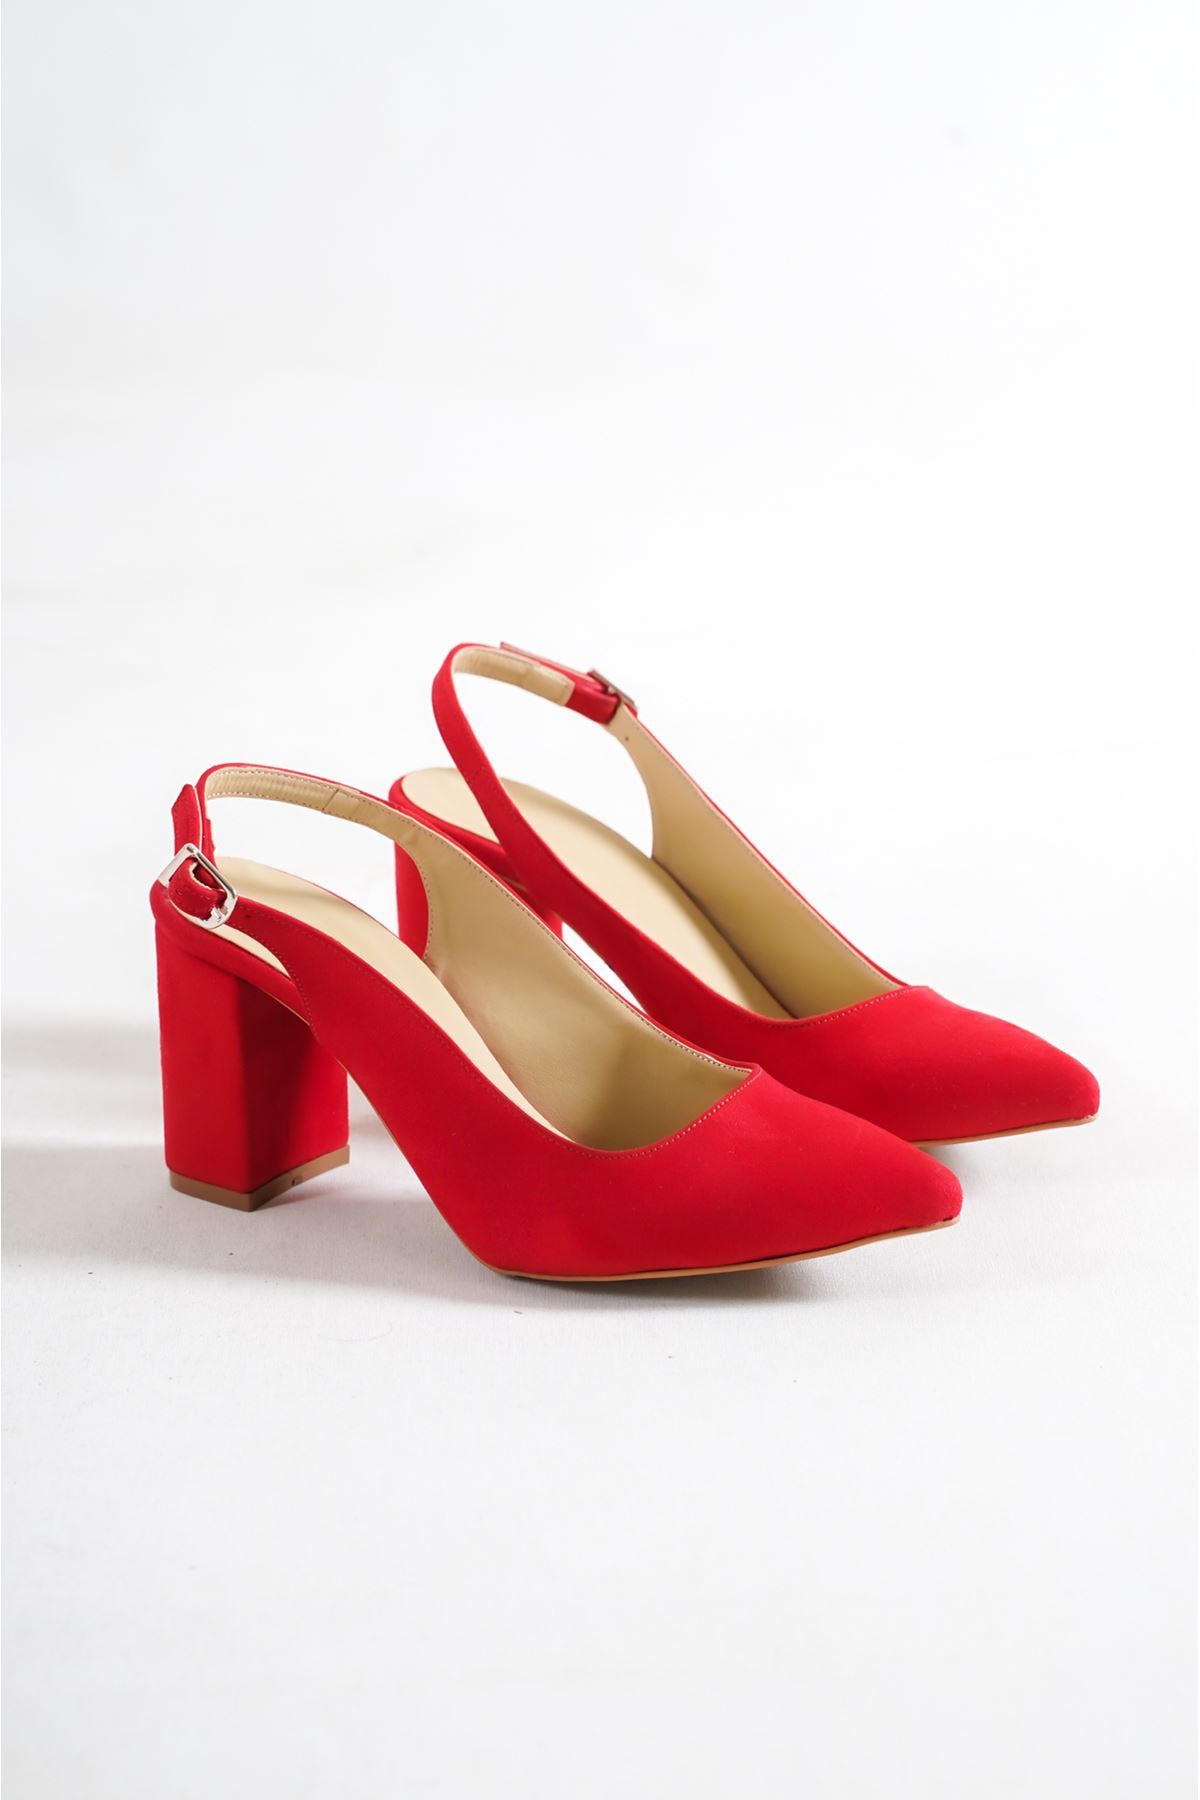 Macan Kırmızı Süet Kısa Topuklu Kadın Ayakkabı